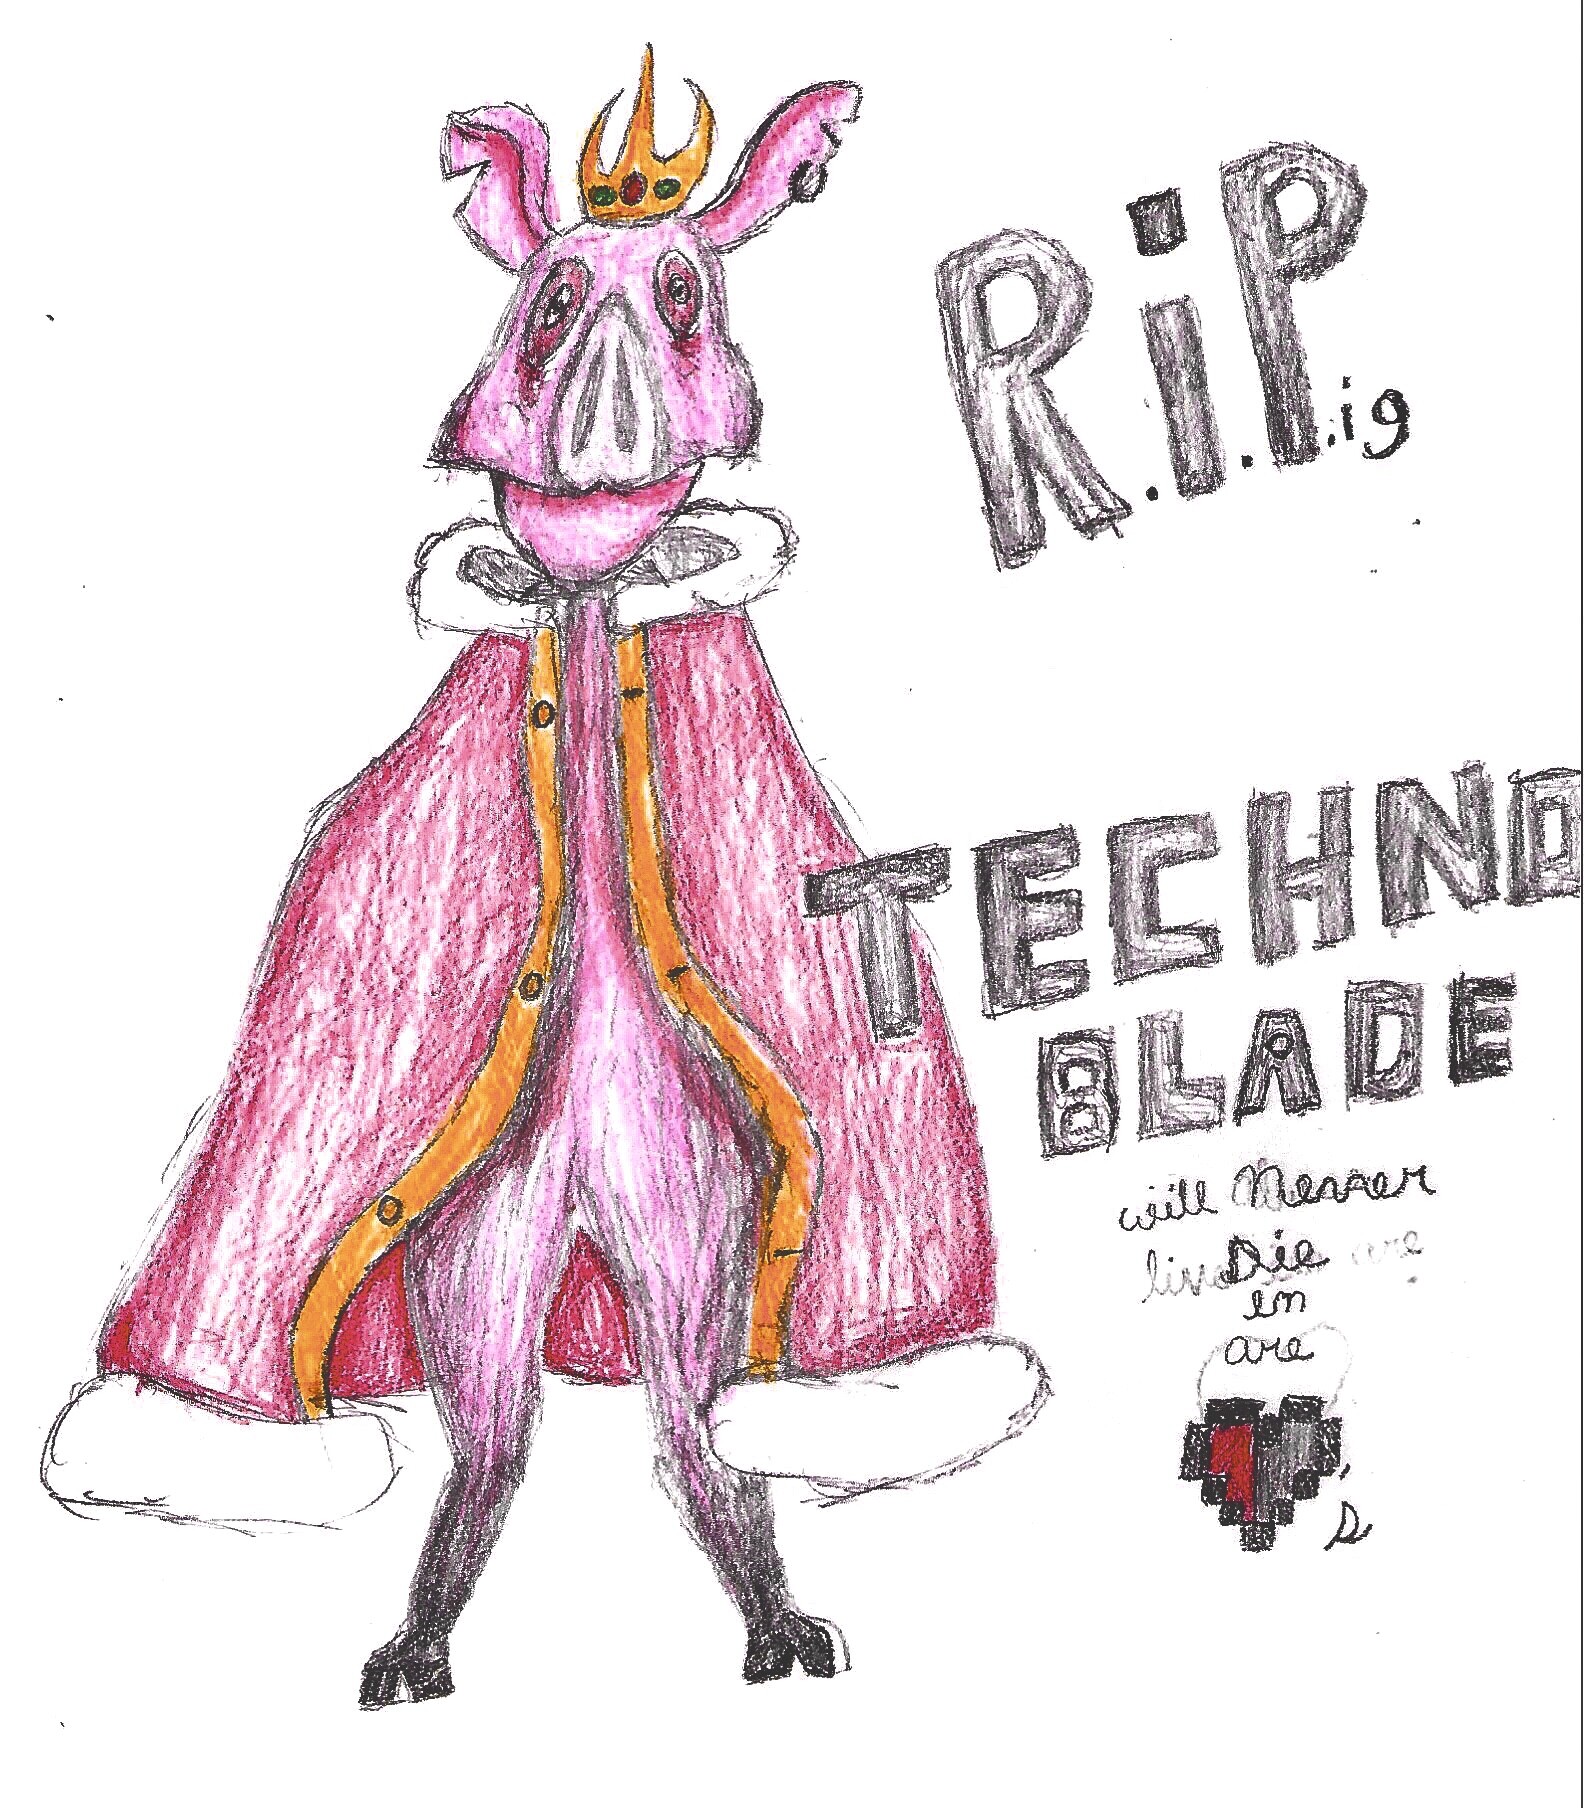 RIP Technoblade (Techno Tribute) 